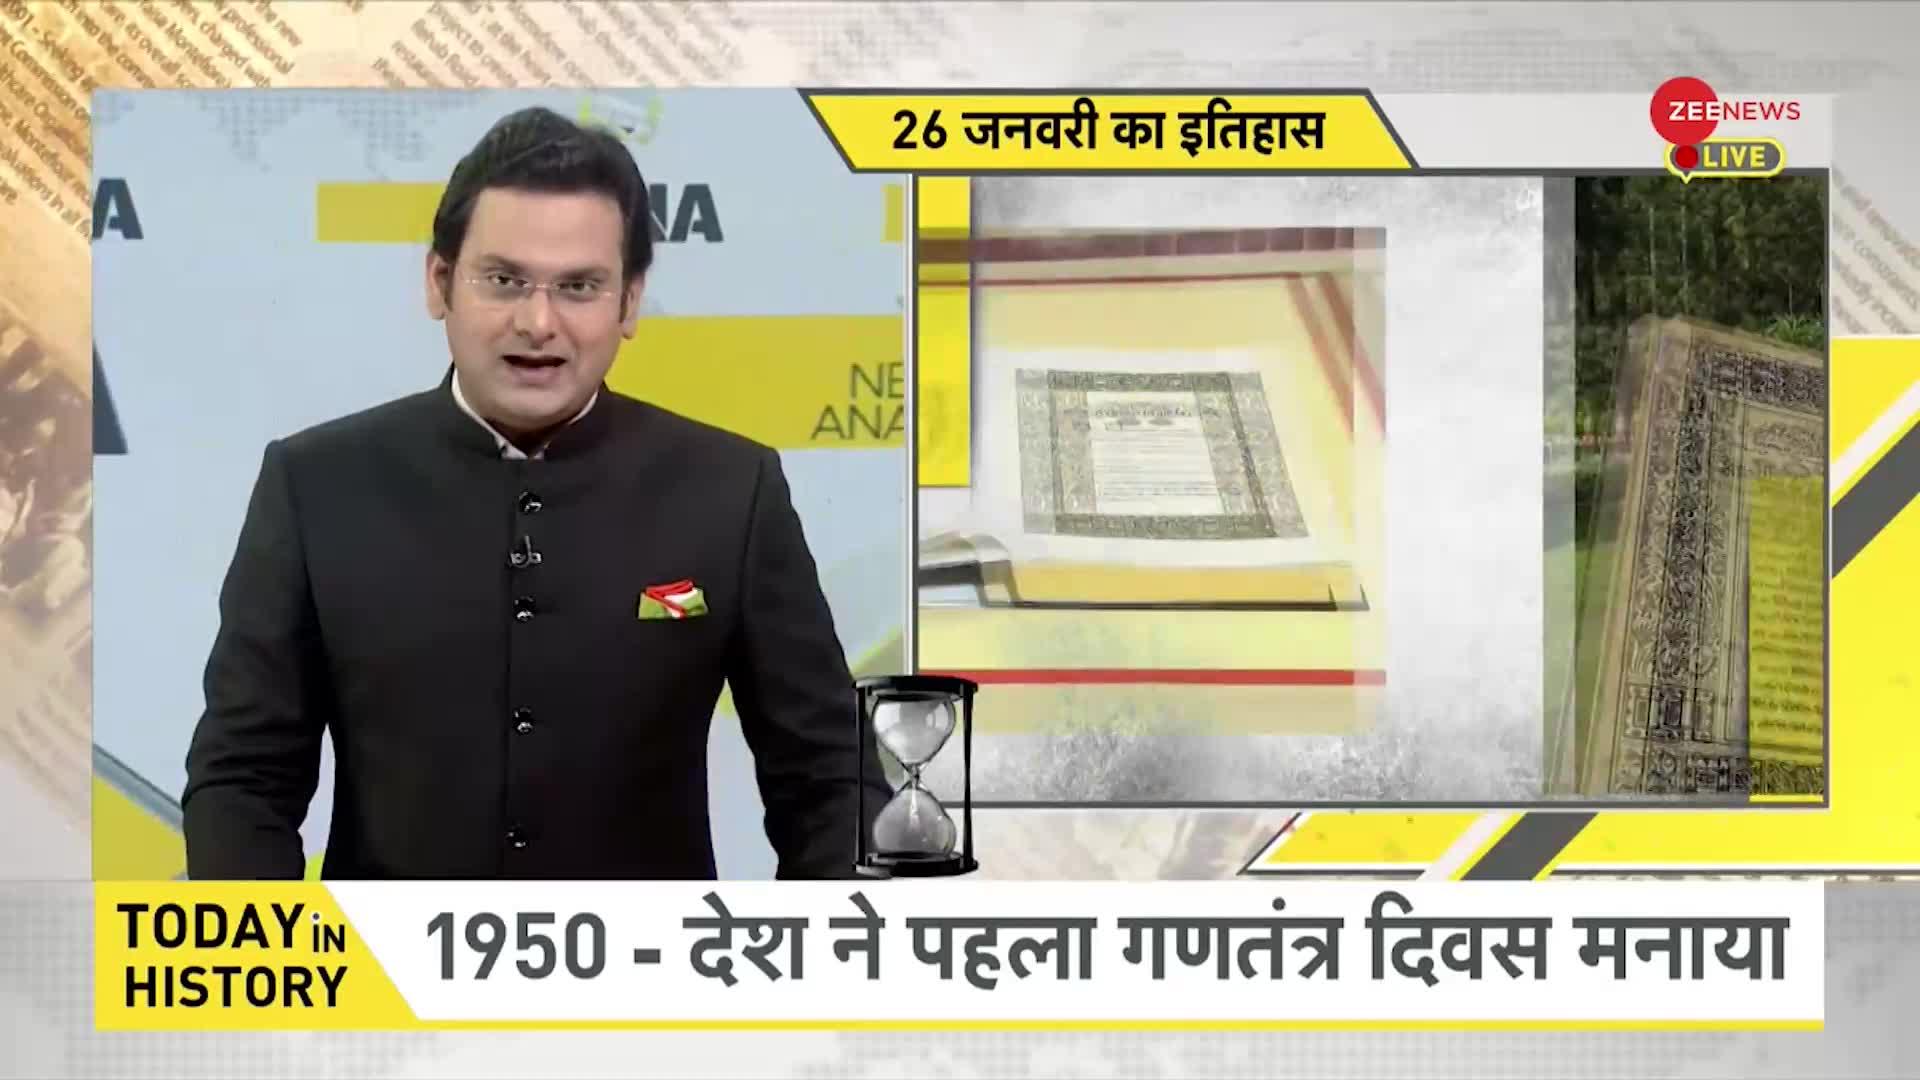 DNA: जब 1965 में हिन्दी को भारत की राजभाषा घोषित किया गया था